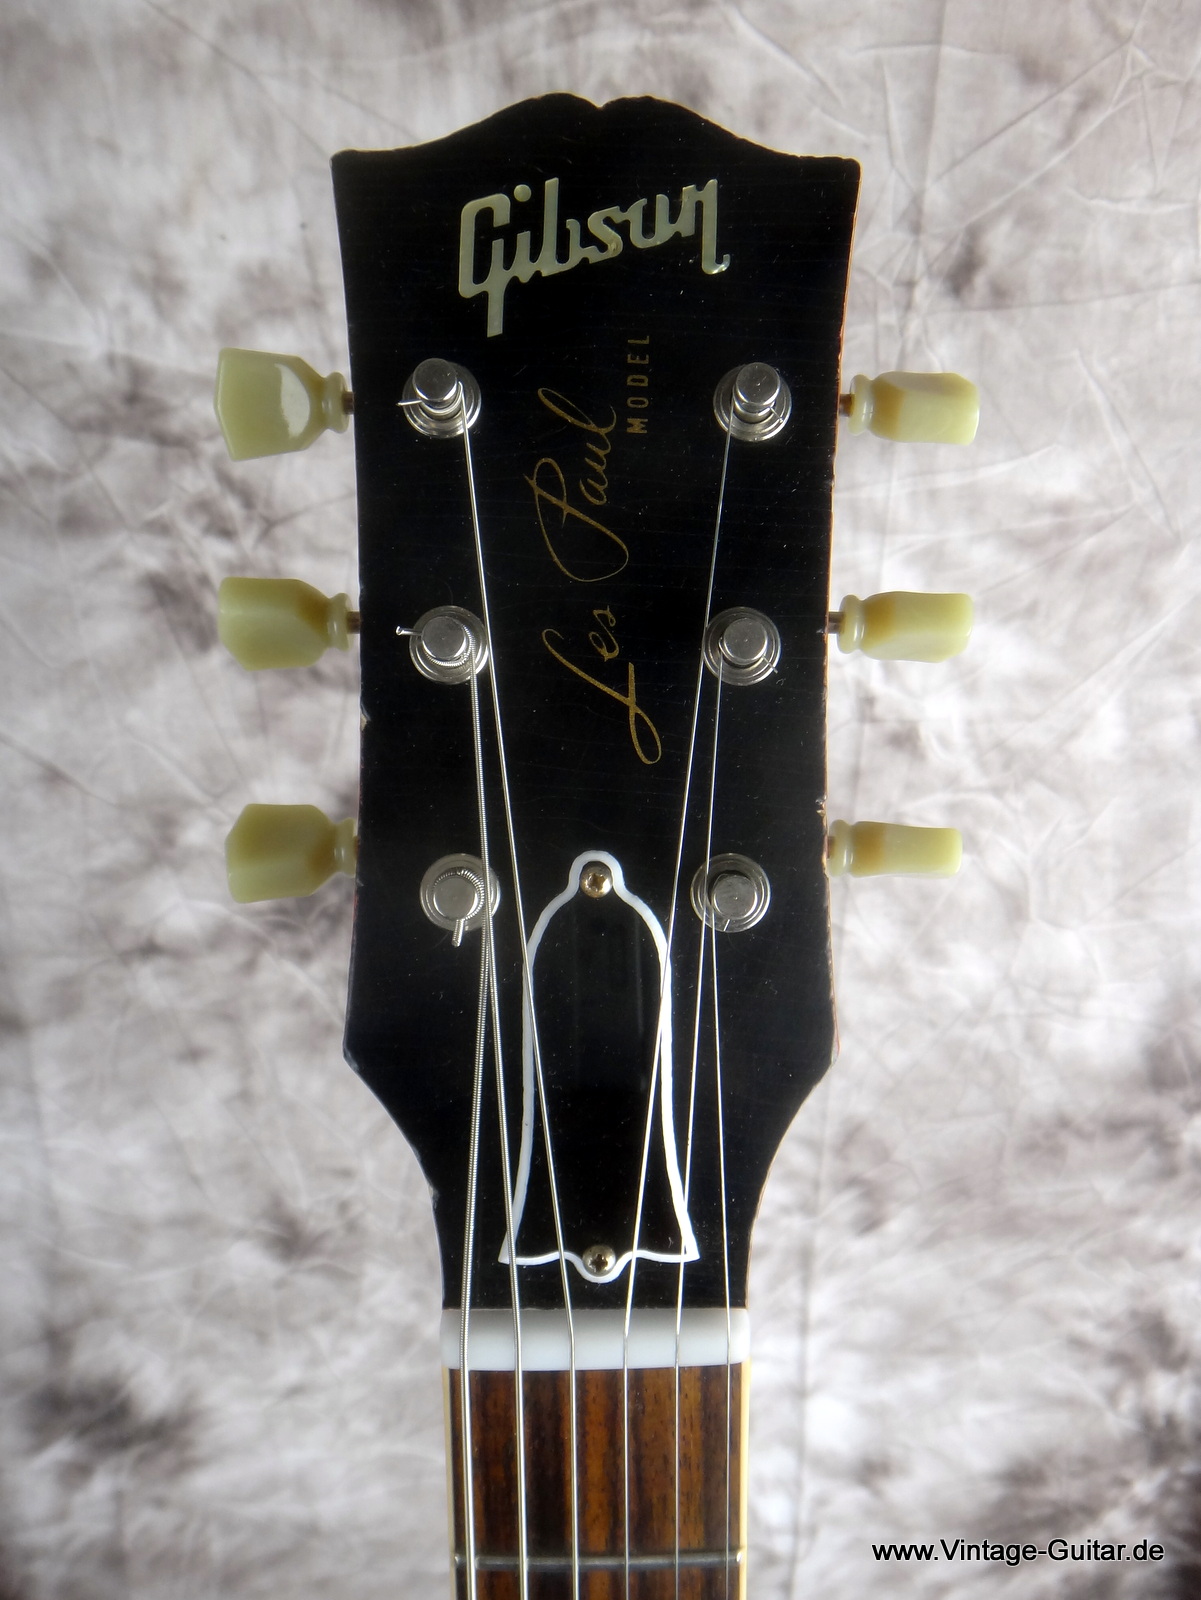 Gibson-Les-Paul-R8-1958-Reissue-Cutsom-Shop-002.JPG